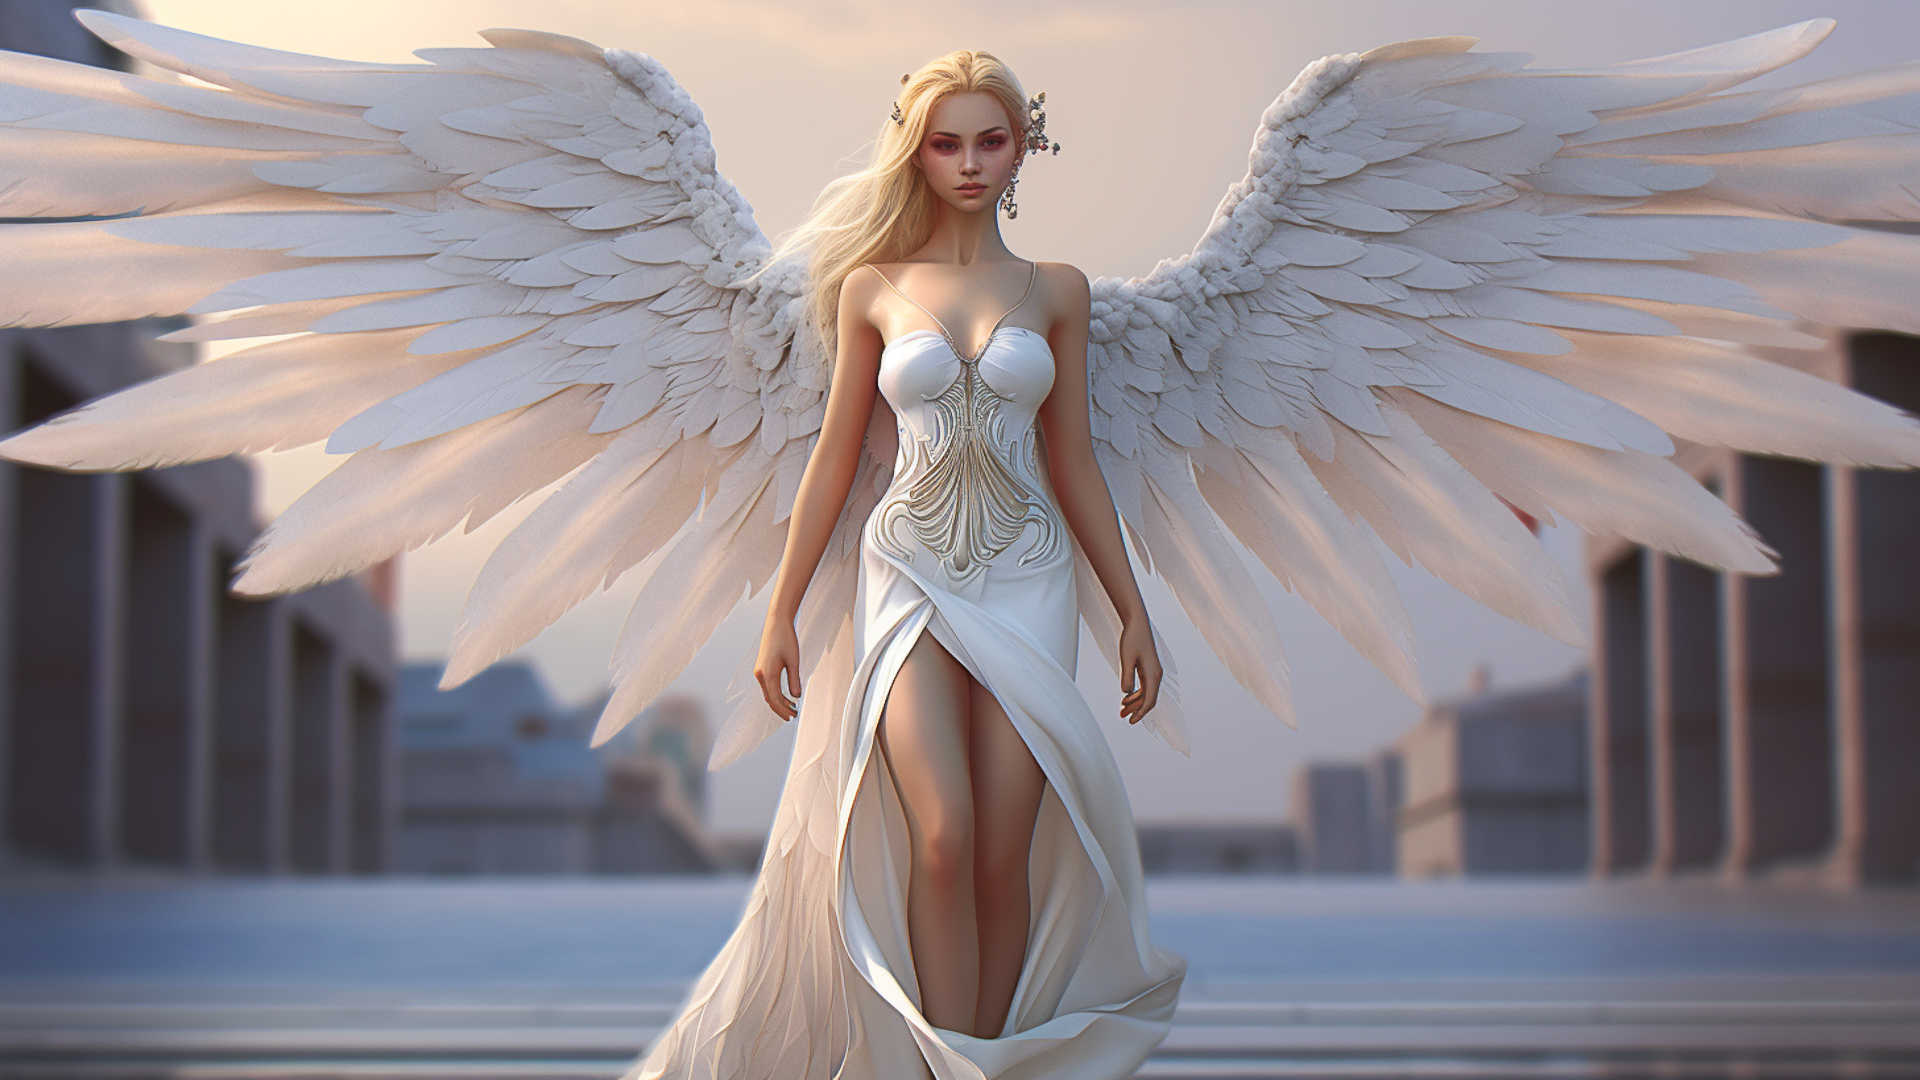 General 1920x1080 AI art angel wings blonde women dress looking at viewer long hair angel wings